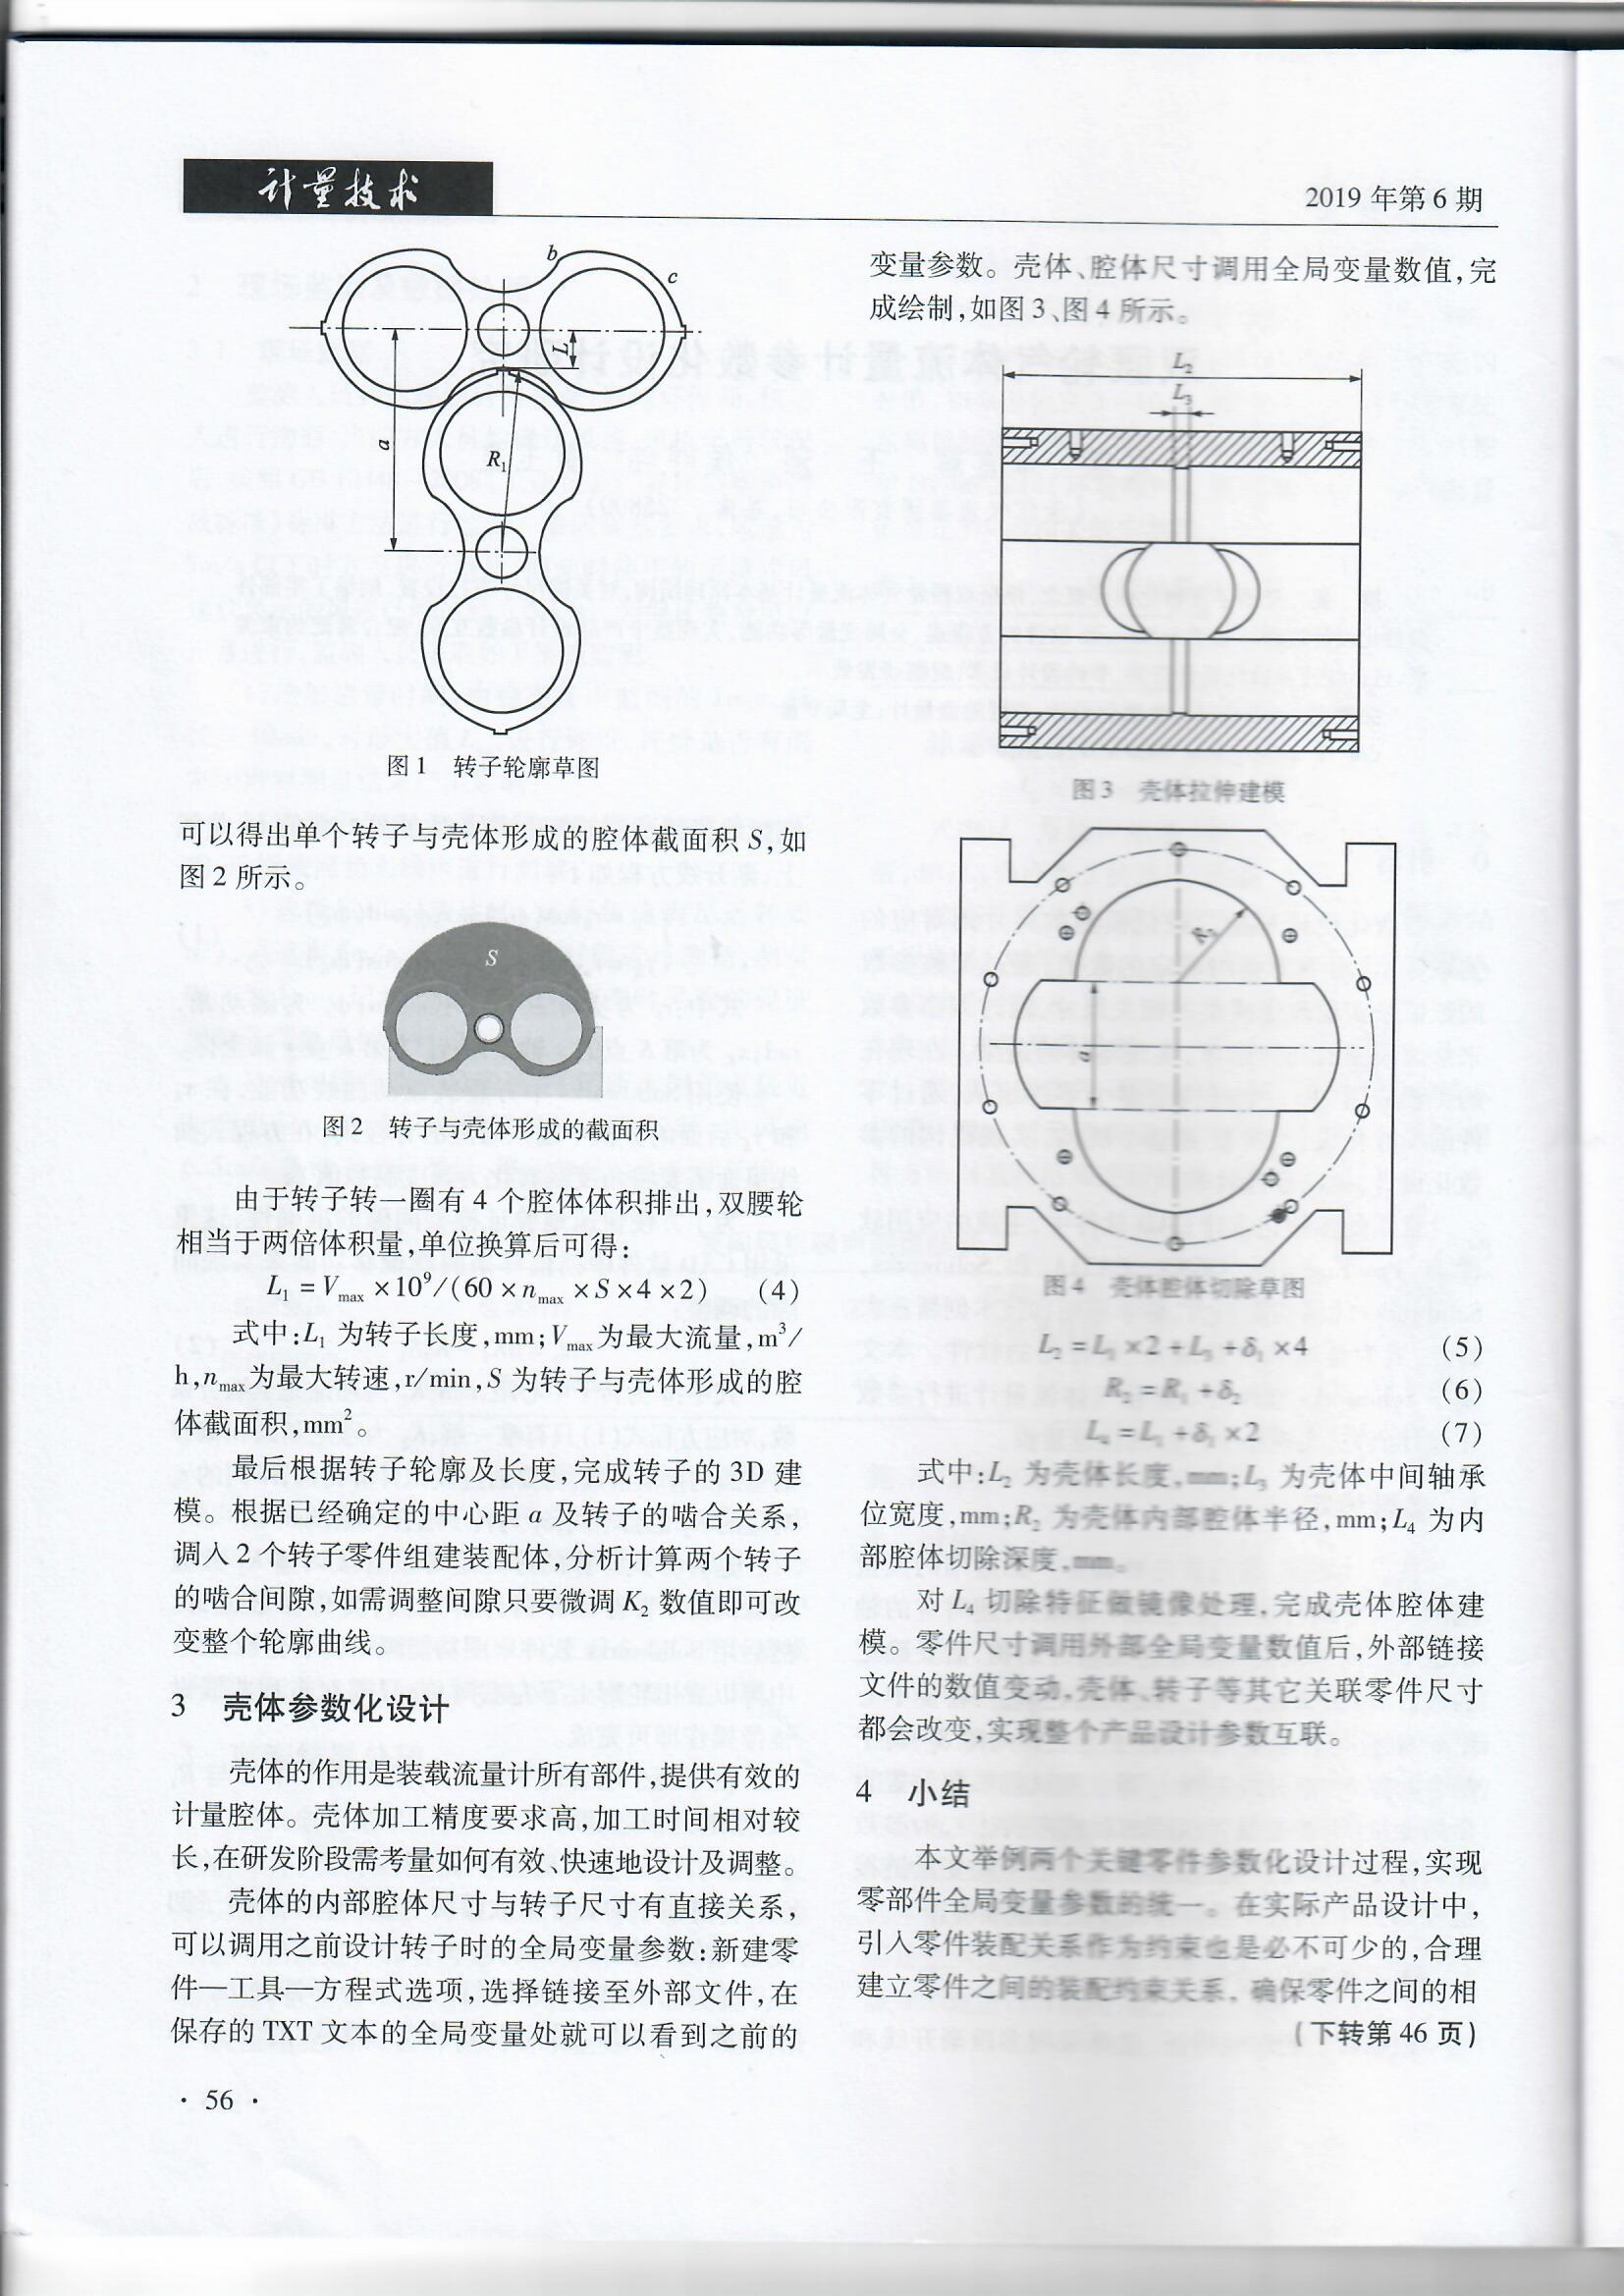 双腰轮气体流量计参数化设计研究（201906）_页面_4.jpg